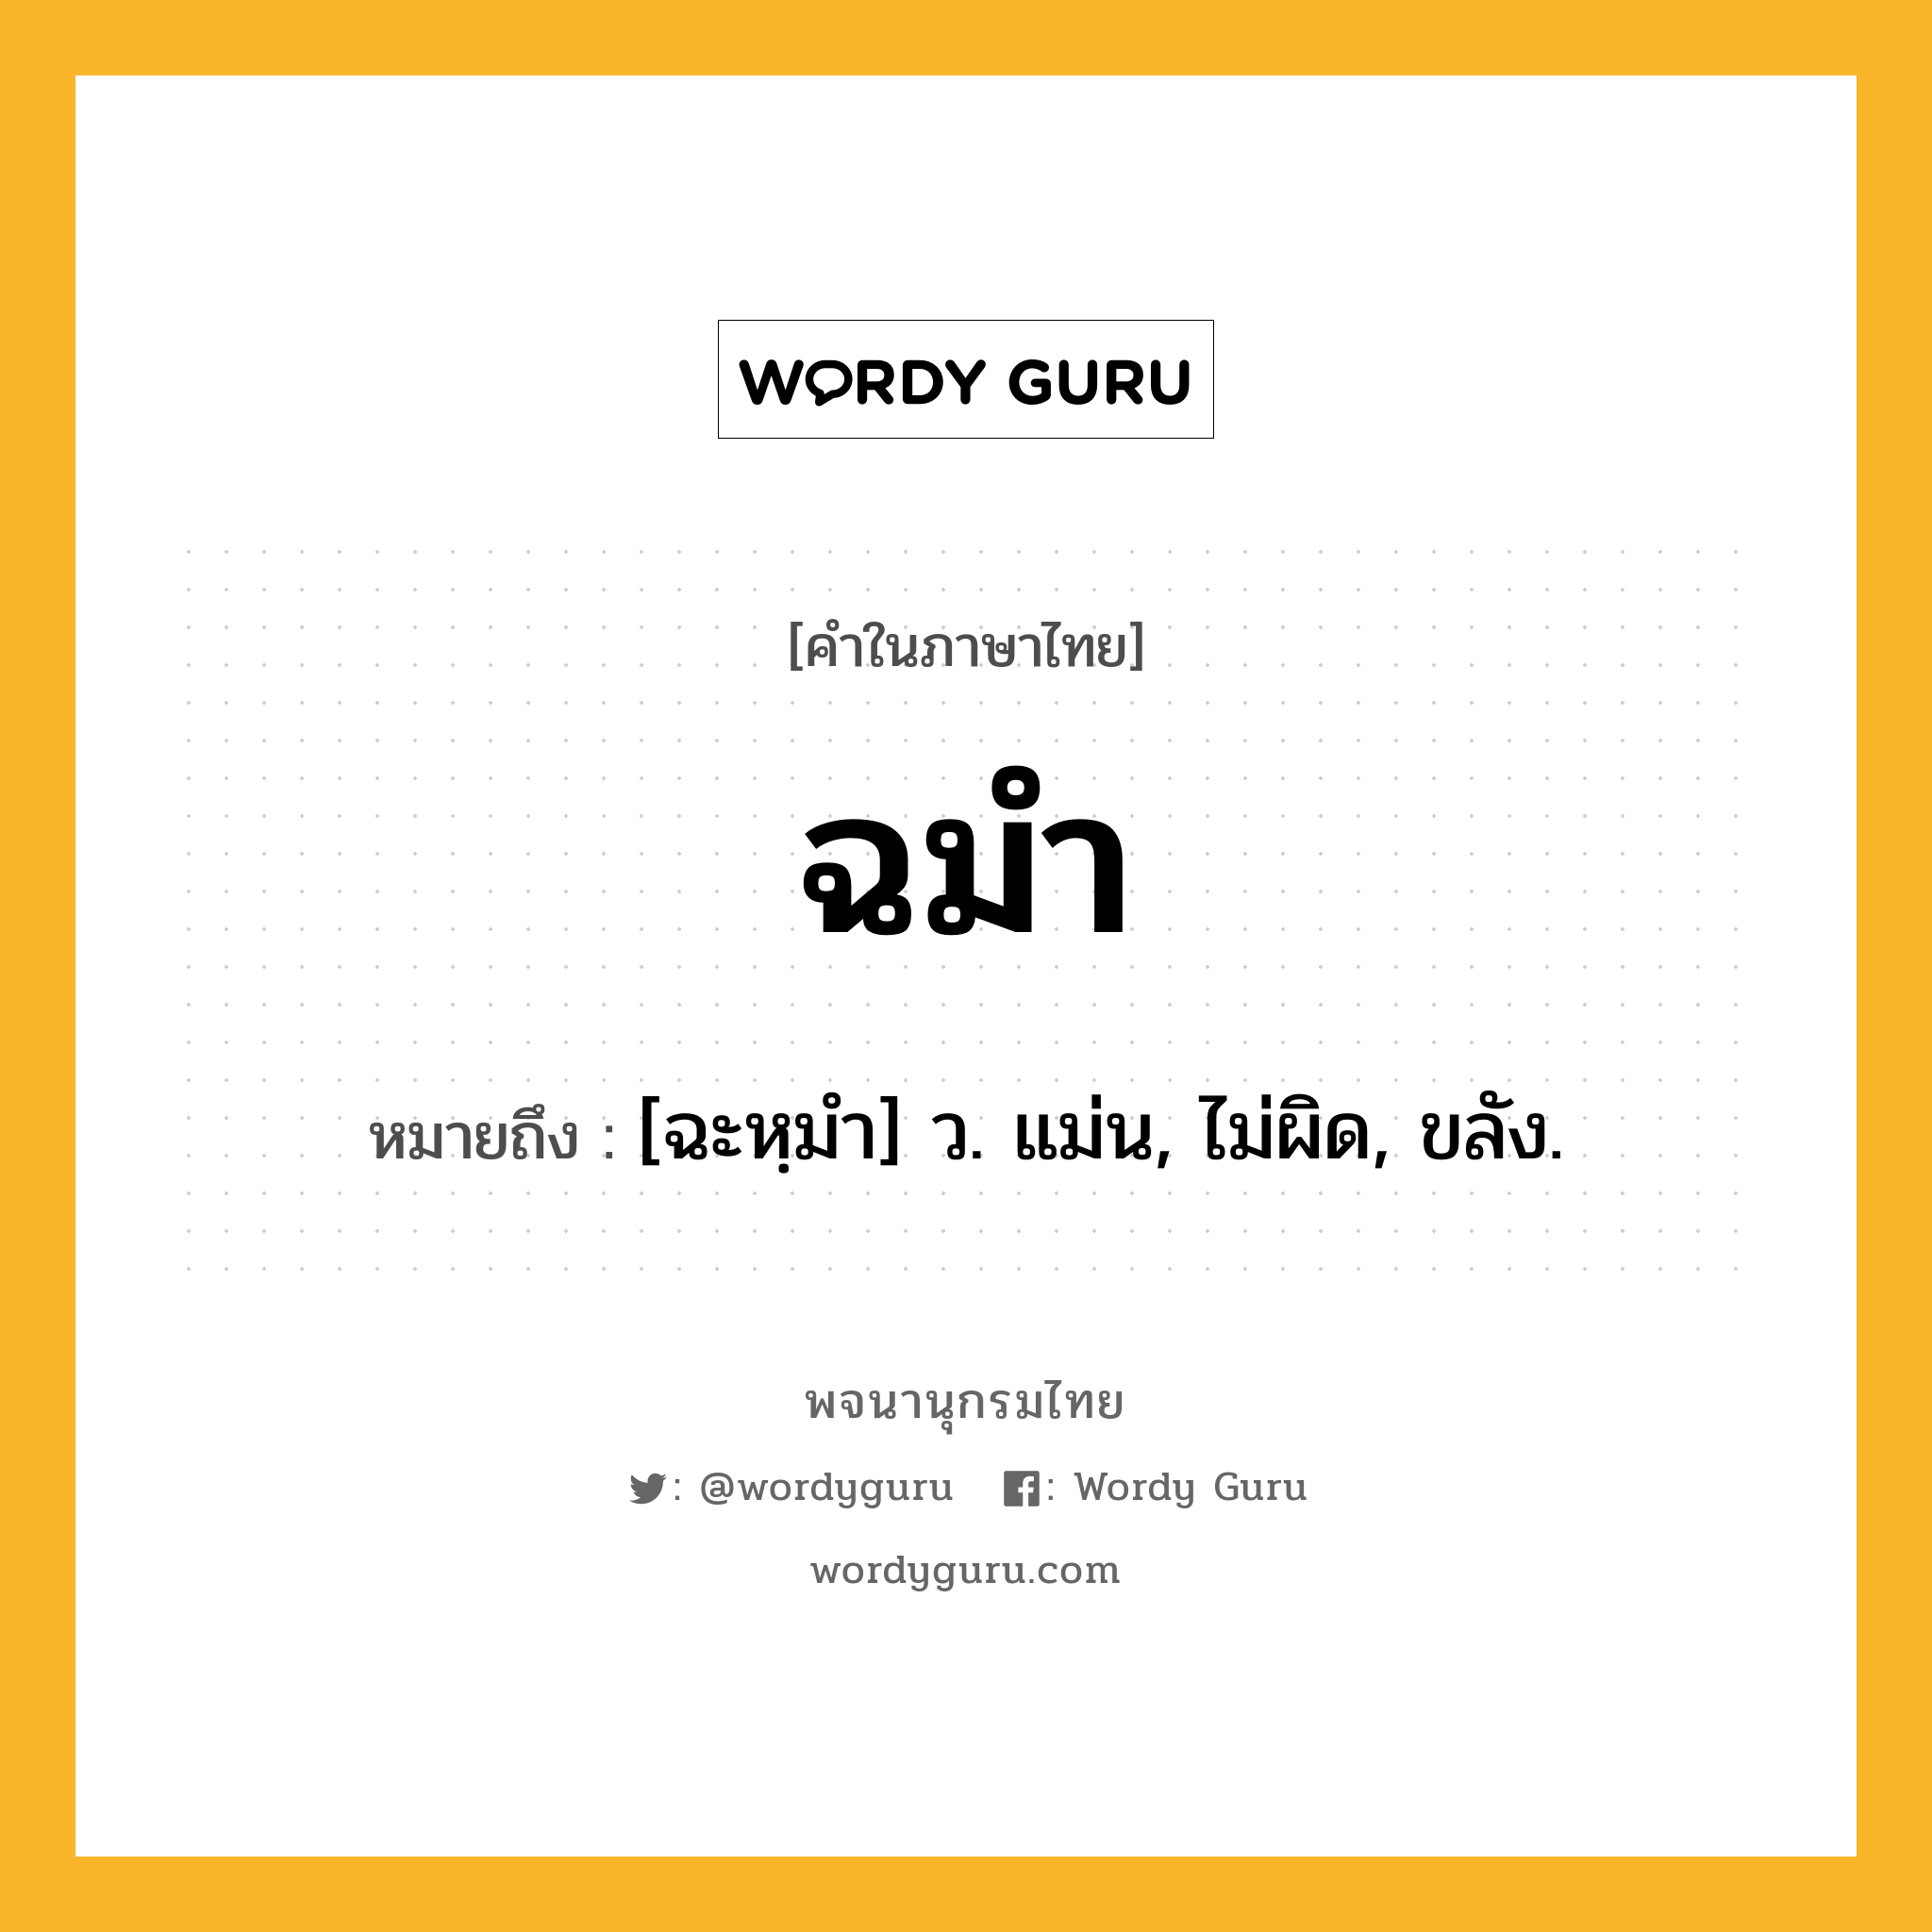 ฉมำ ความหมาย หมายถึงอะไร?, คำในภาษาไทย ฉมำ หมายถึง [ฉะหฺมํา] ว. แม่น, ไม่ผิด, ขลัง.